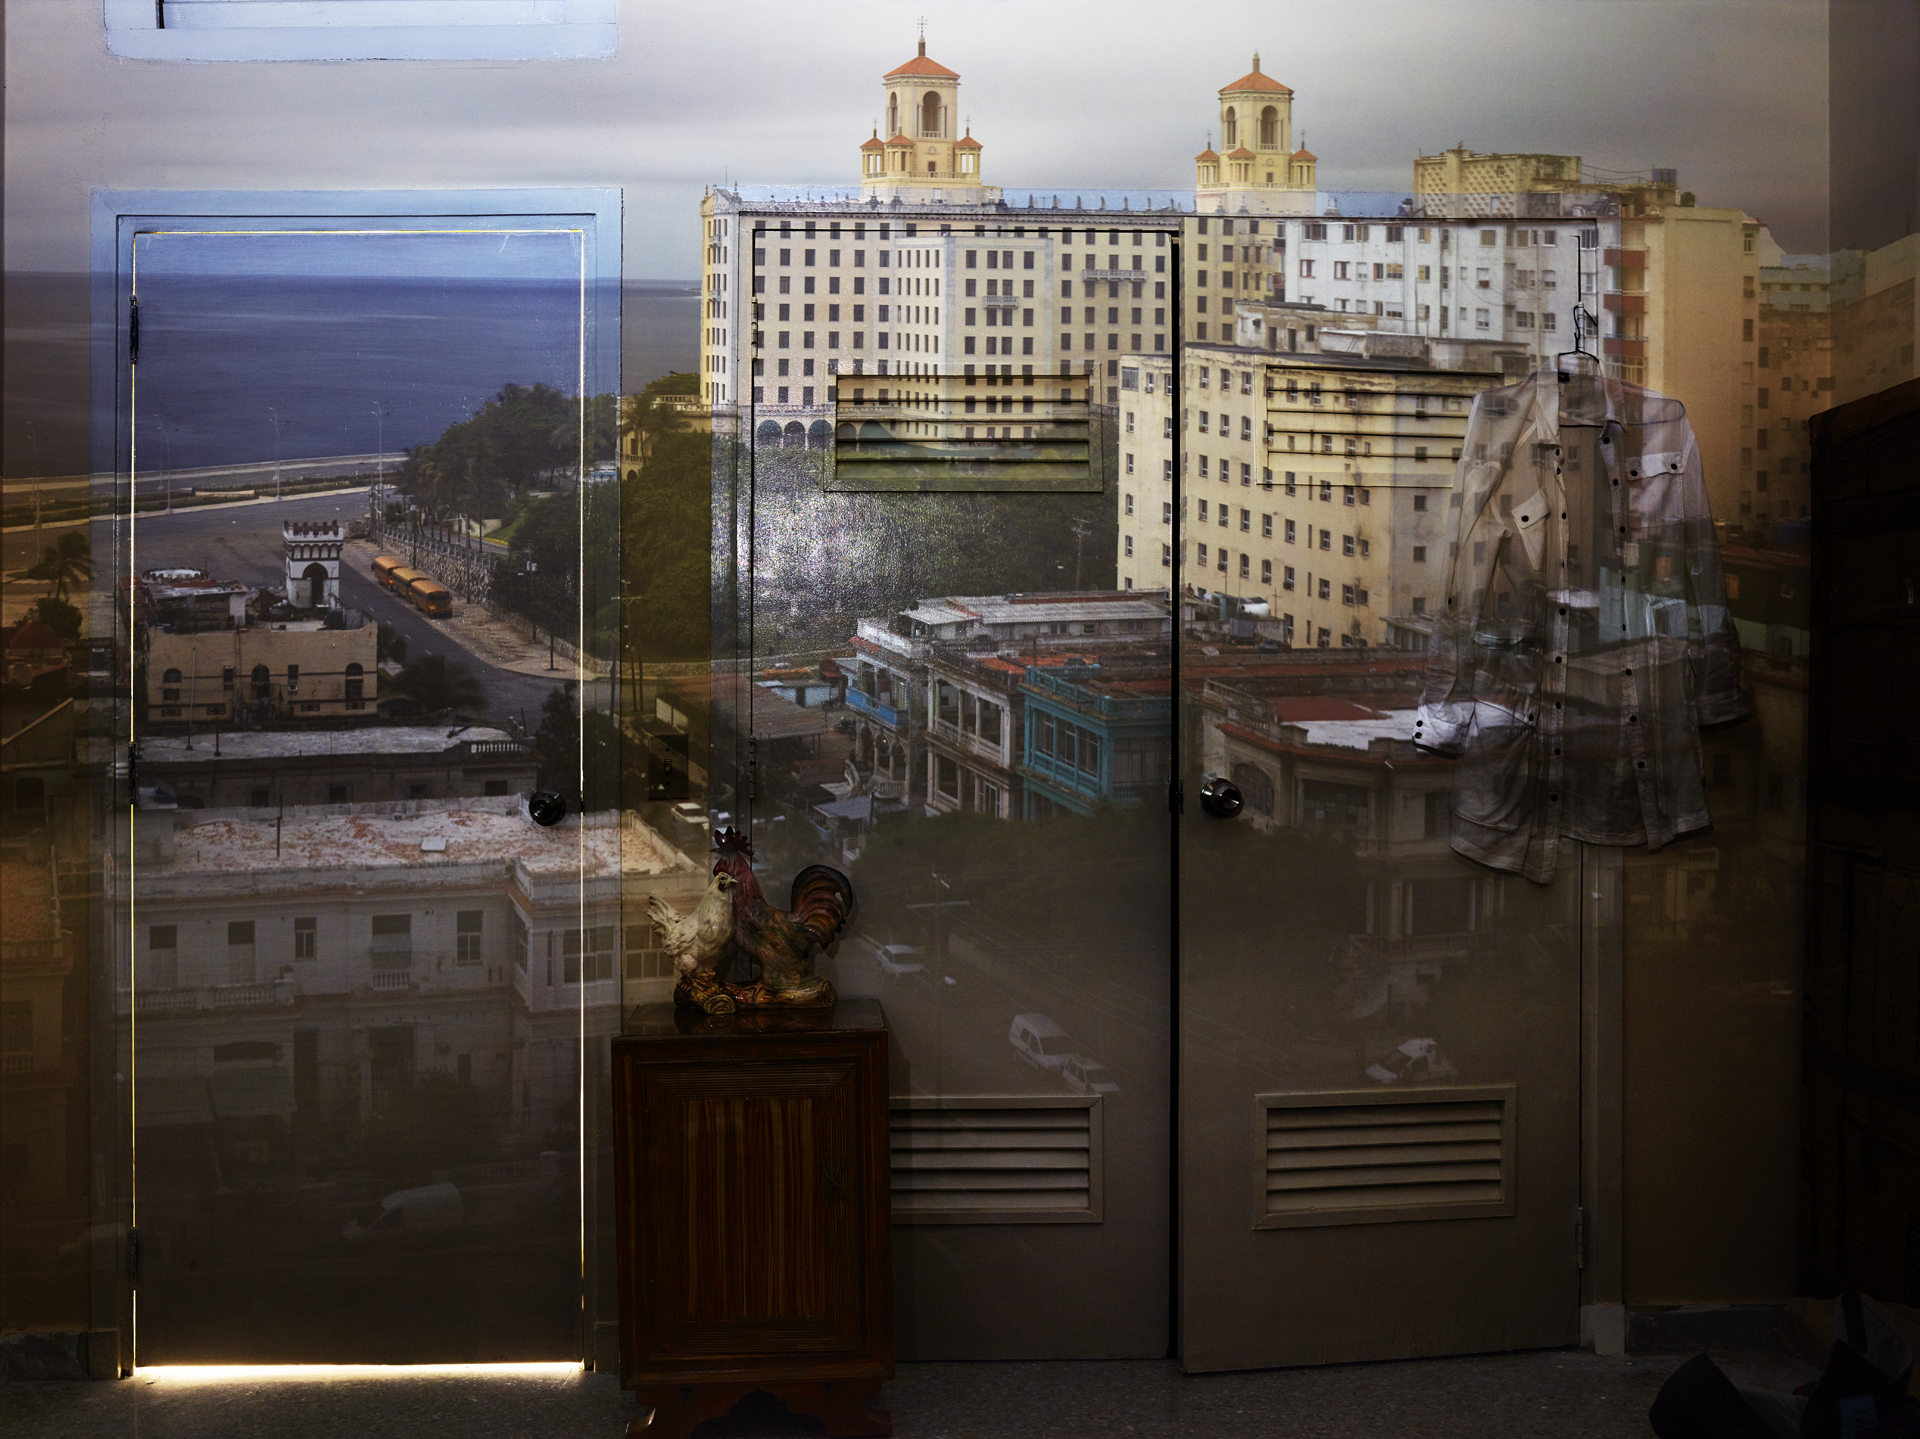 2014_Camera Obscura- View of the Hotel Nacional, Havana, Cuba.png